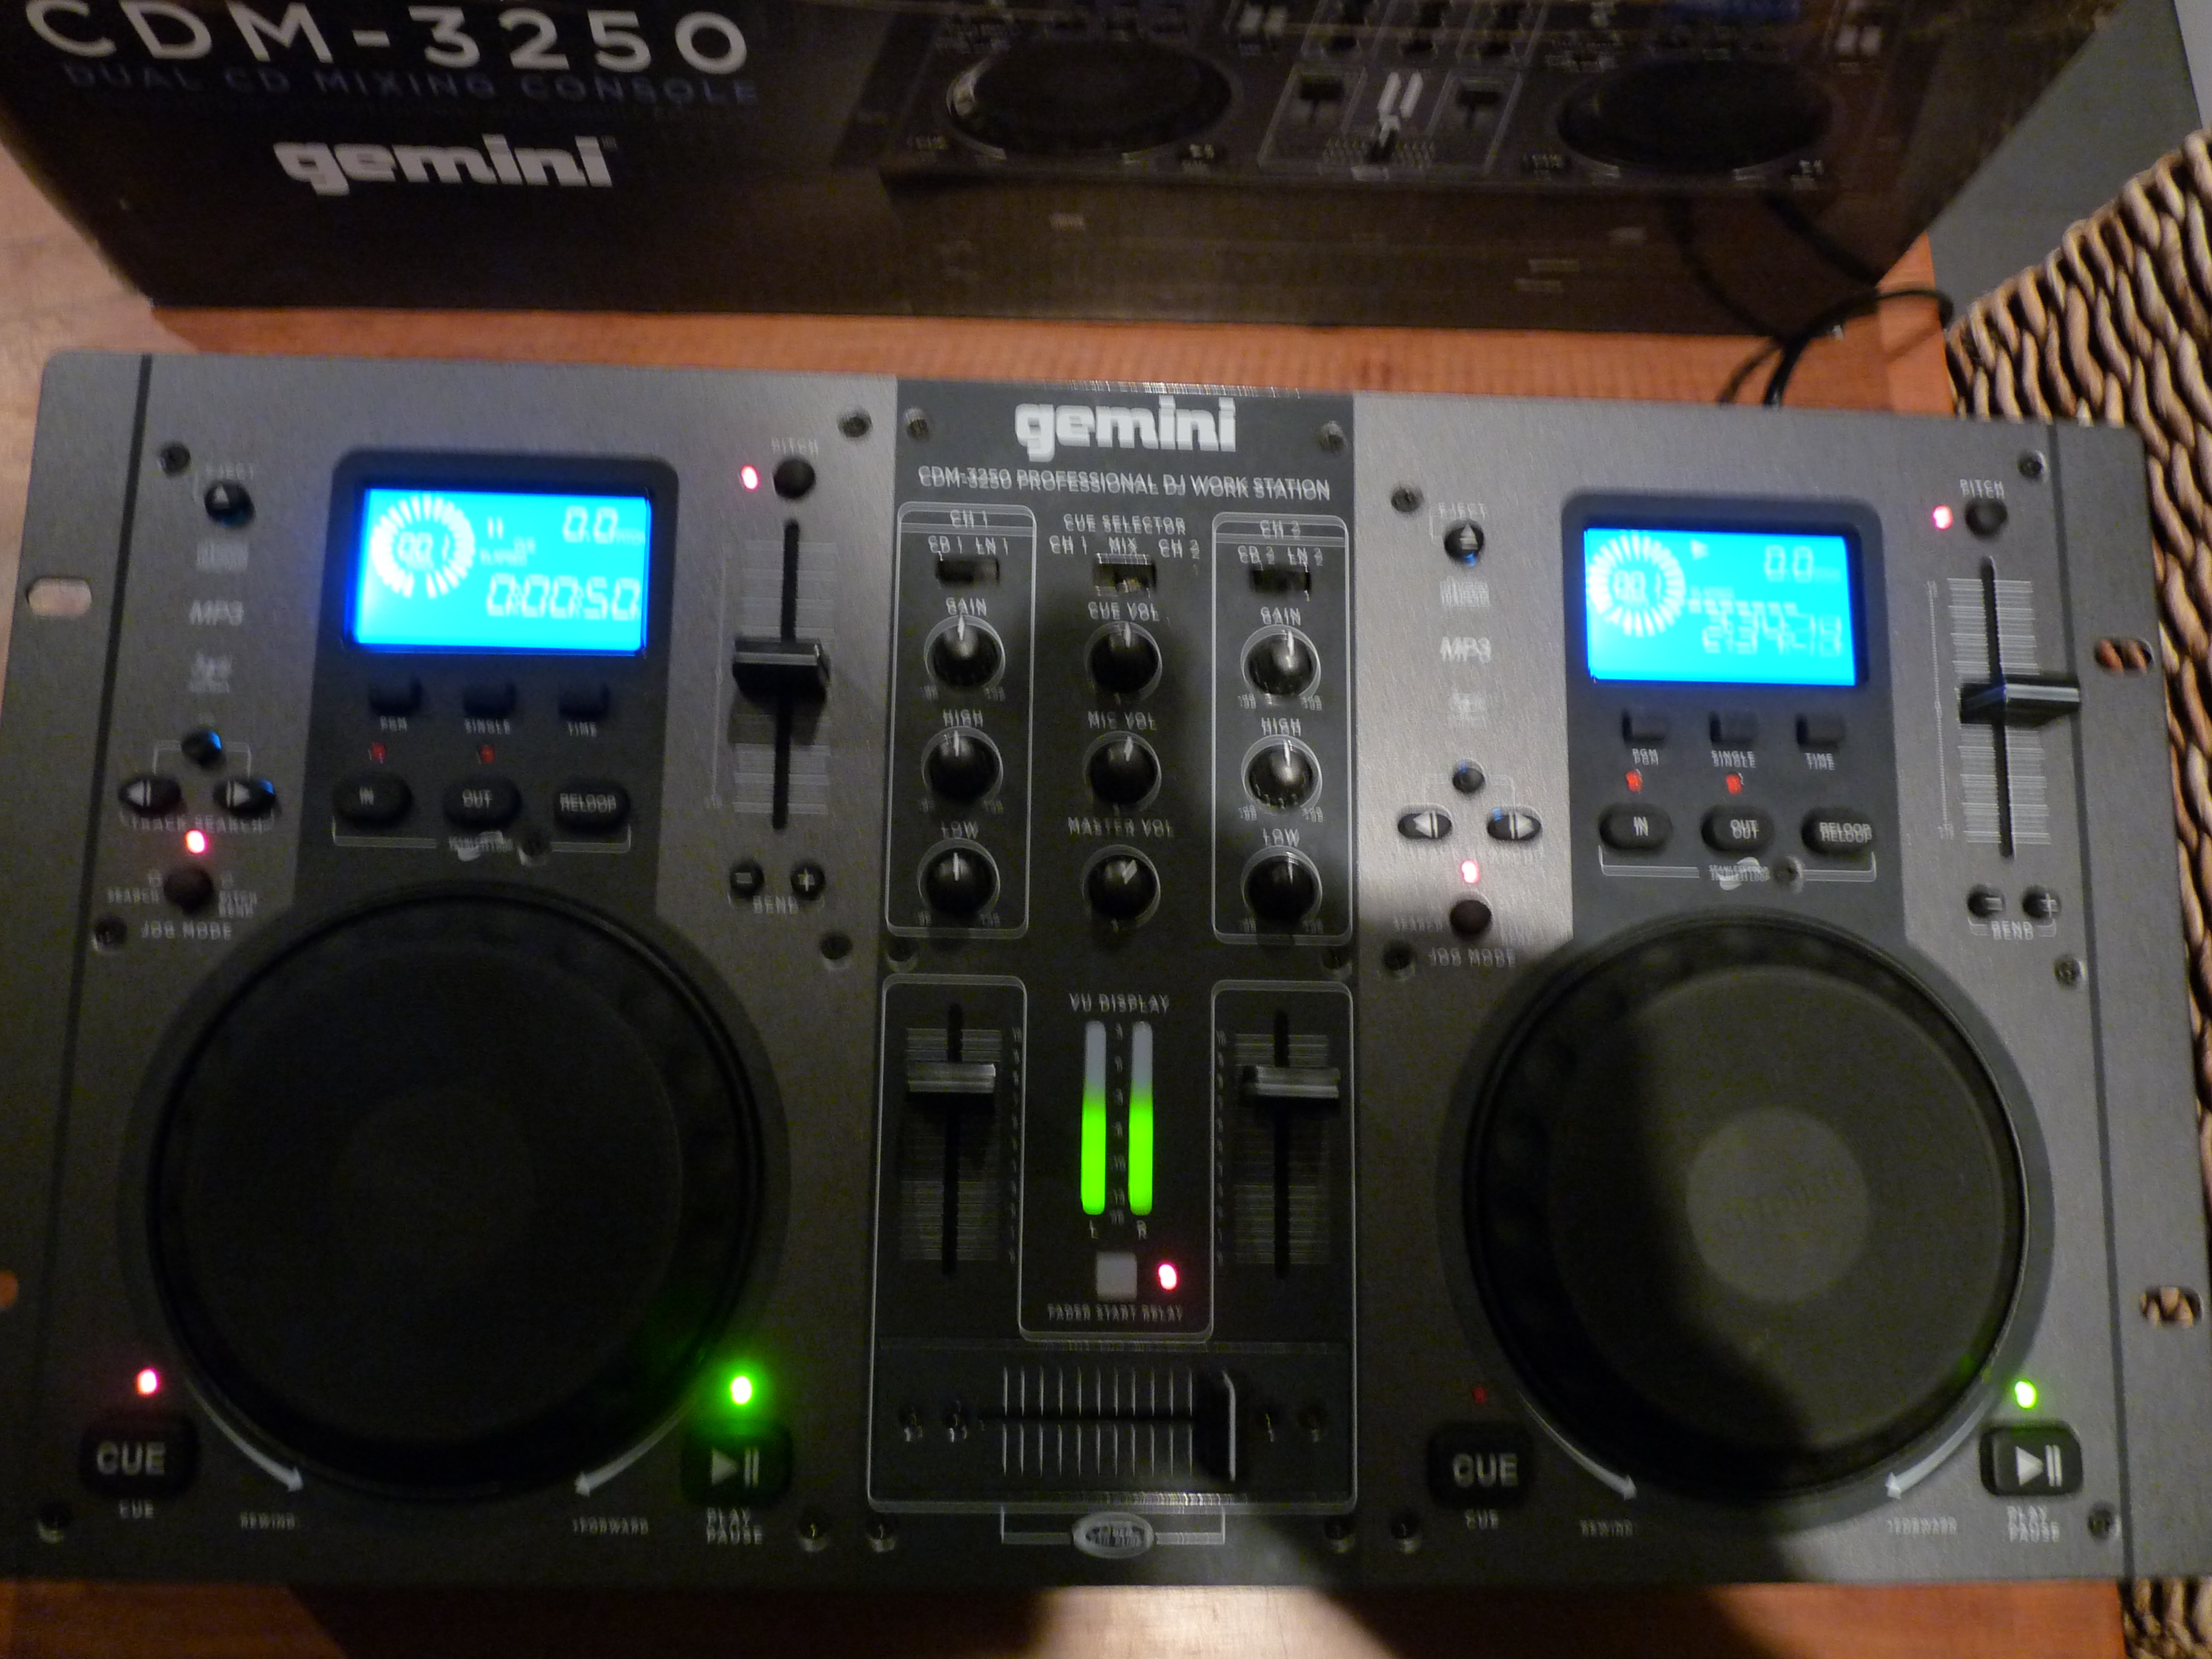 CDM-3250 - Gemini DJ CDM-3250 - Audiofanzine